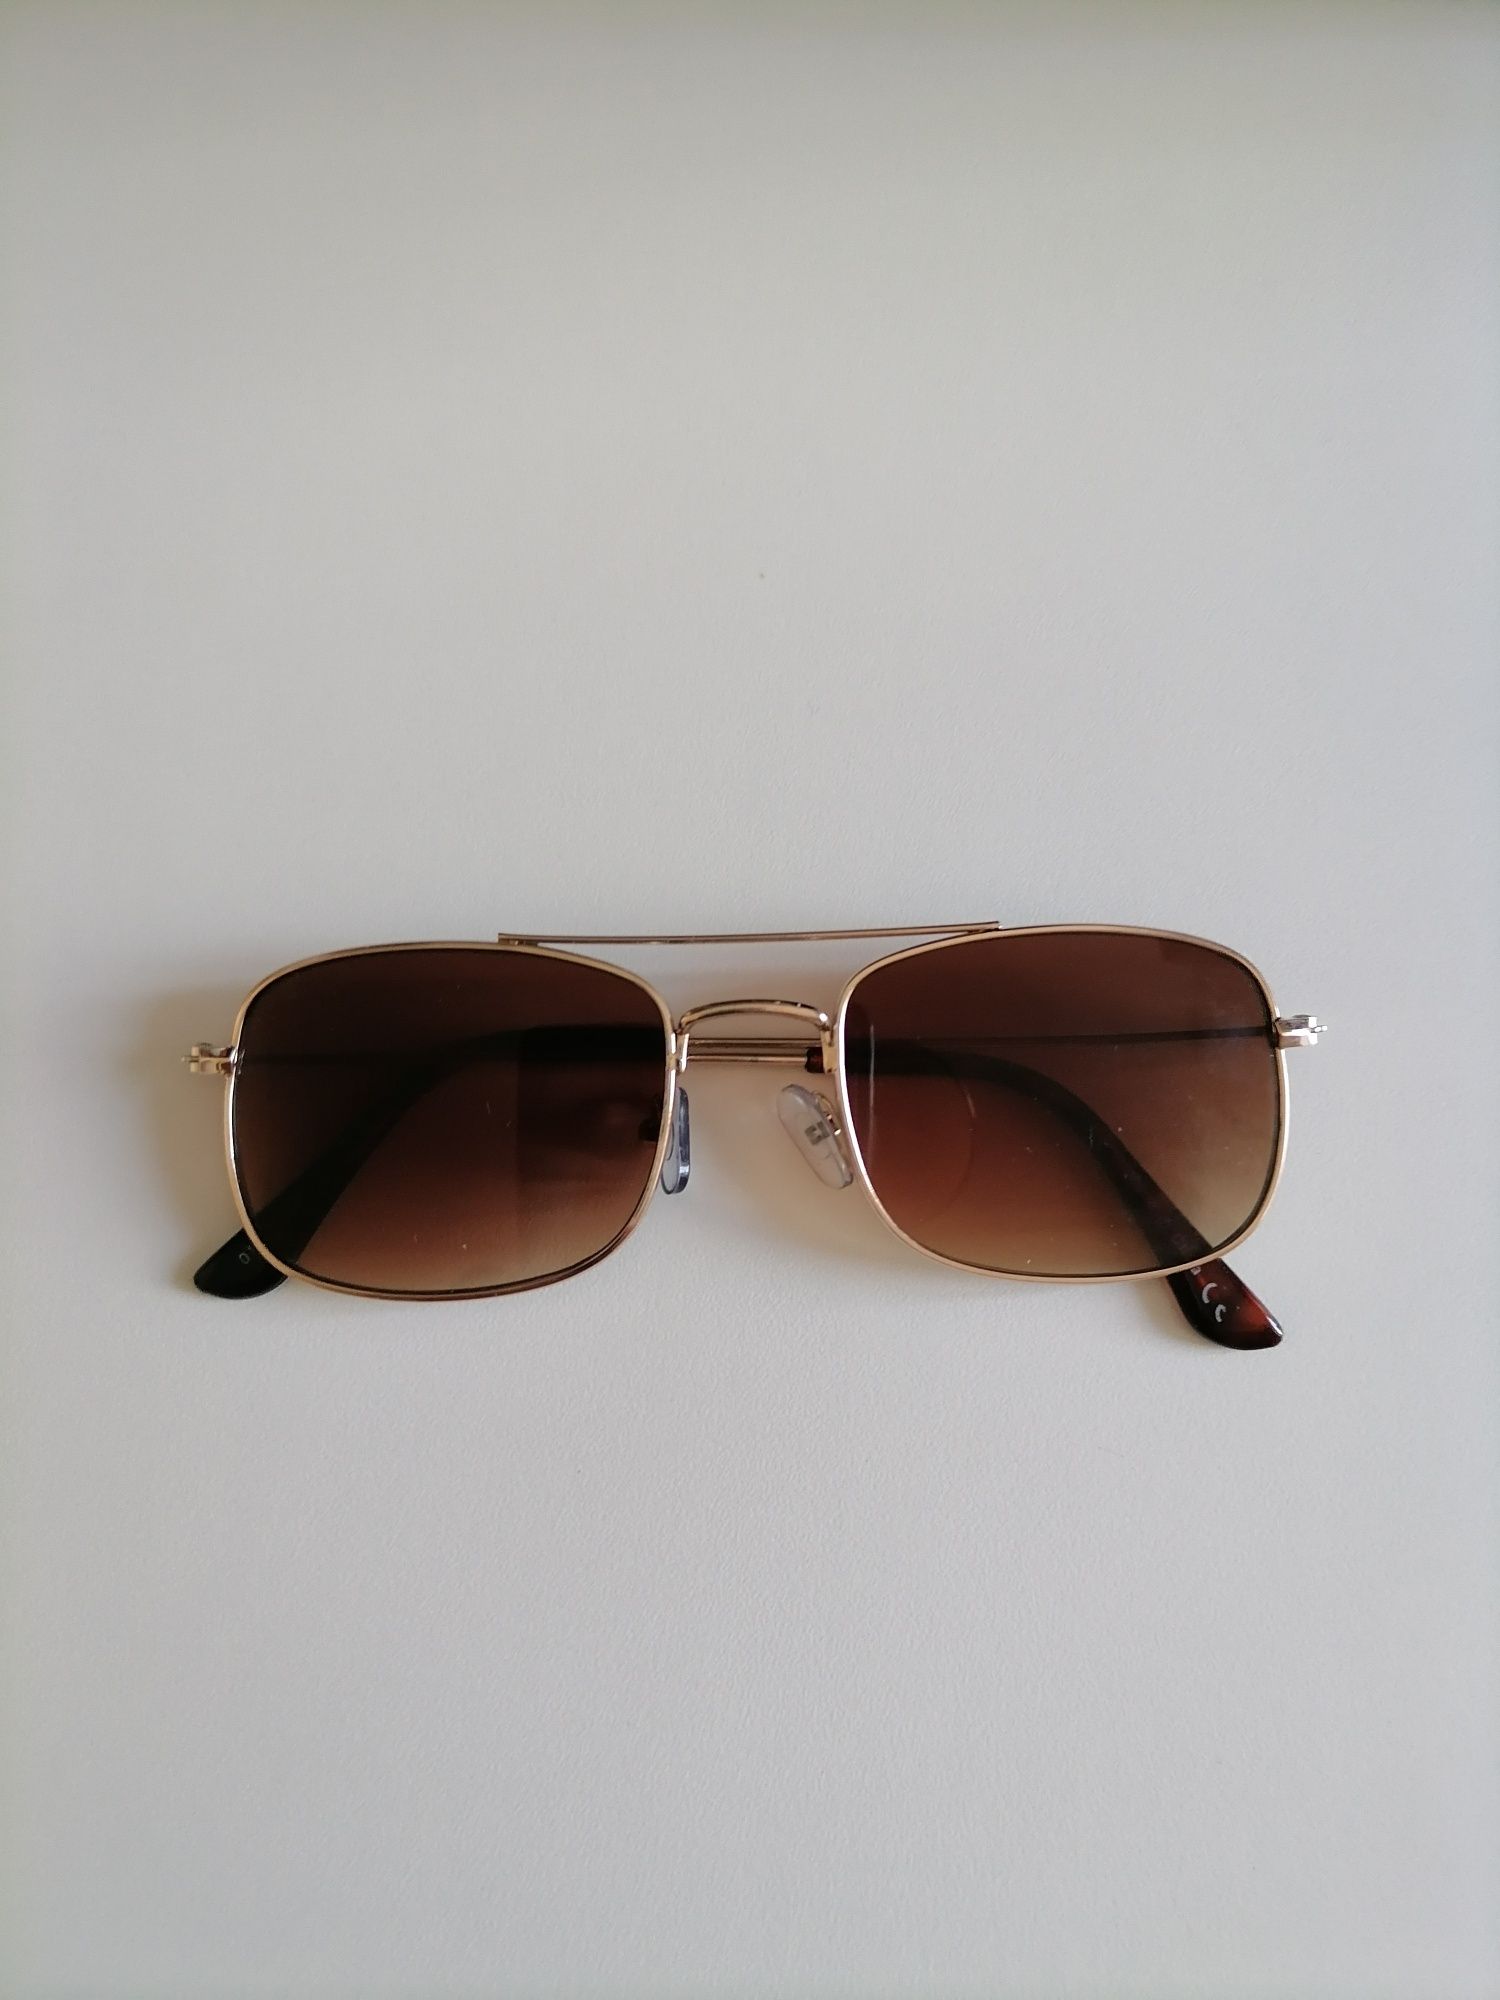 Vând ochelari de soare în stare perfecta, produs de calitate.